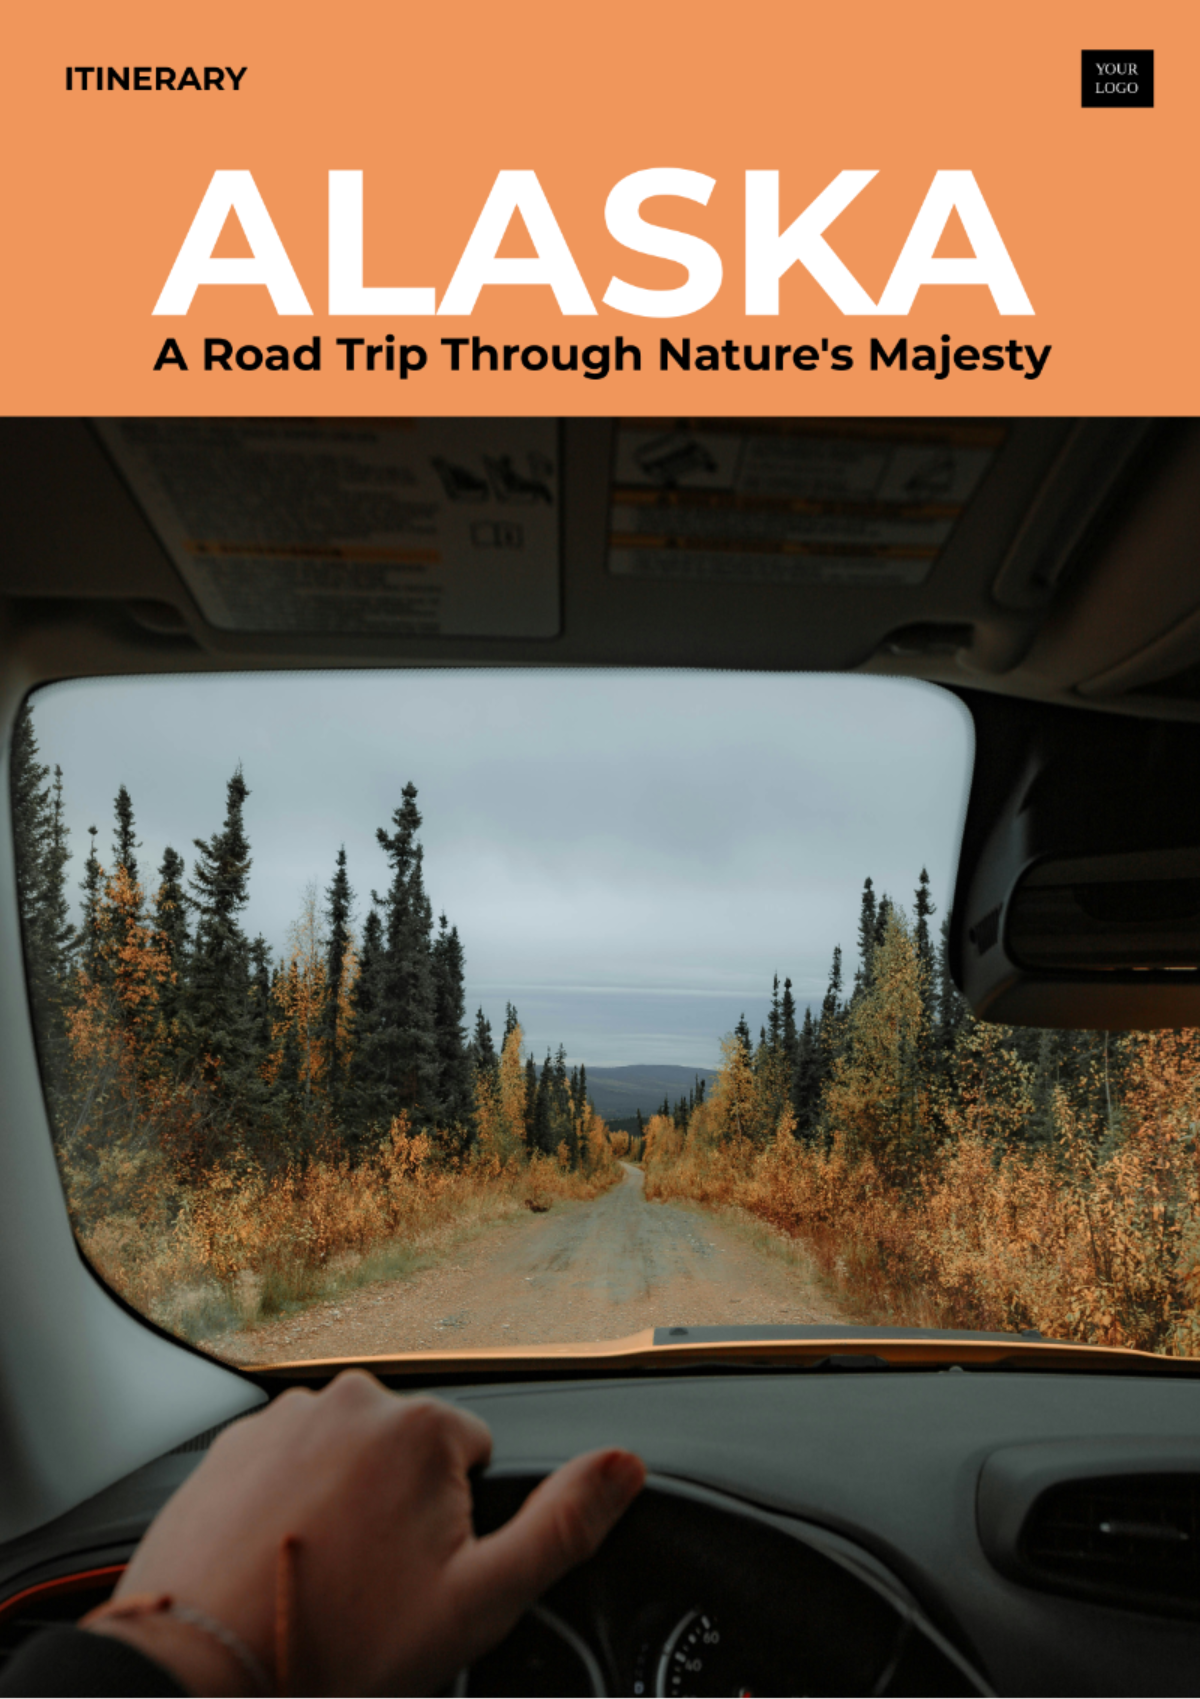 Free 2 Week Alaska Road Trip Itinerary Template